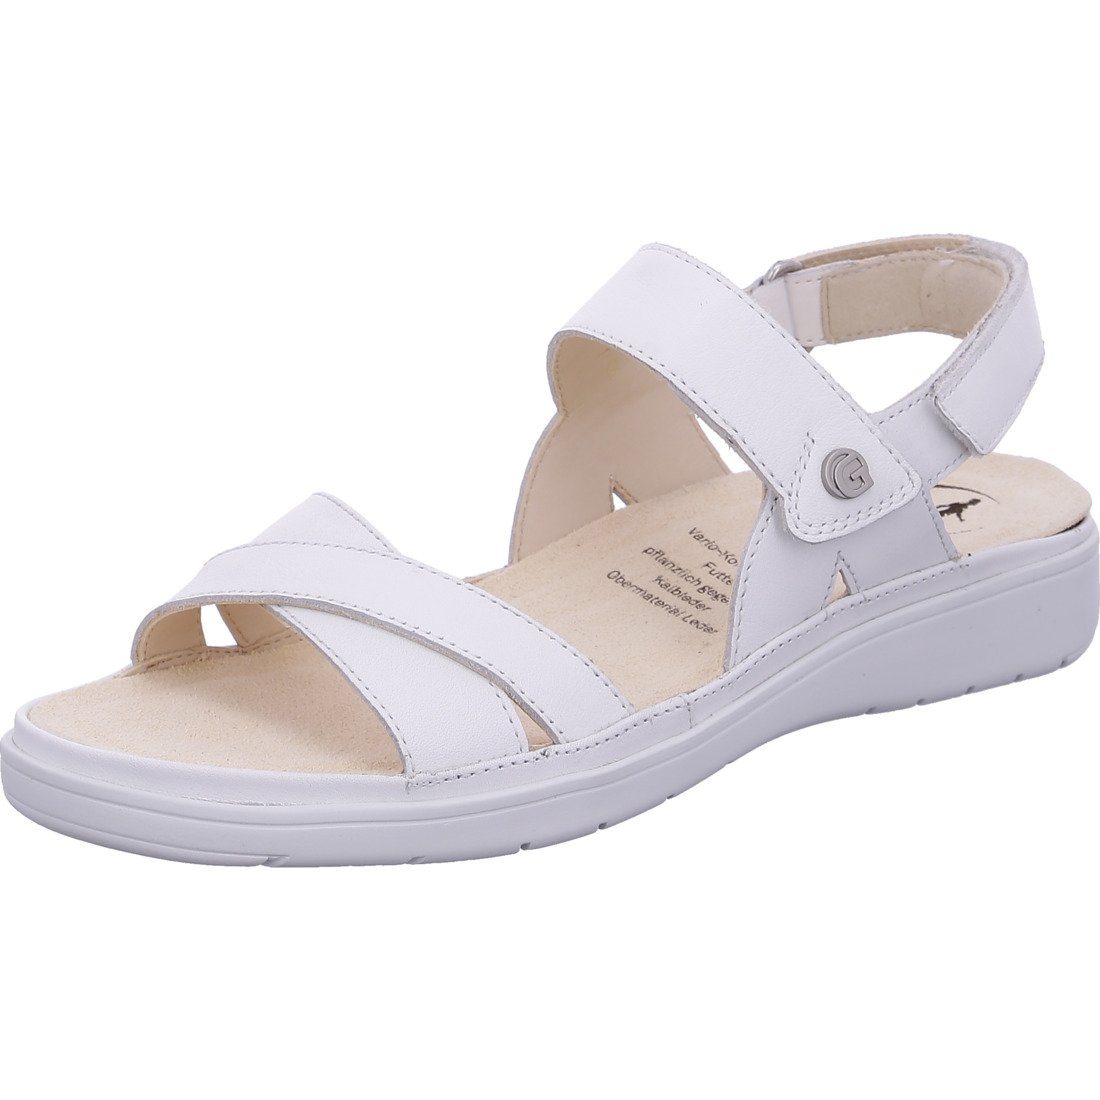 Ganter Ganter Schuhe, Evi Sandalette - 048828 Sandalette weiß Glattleder